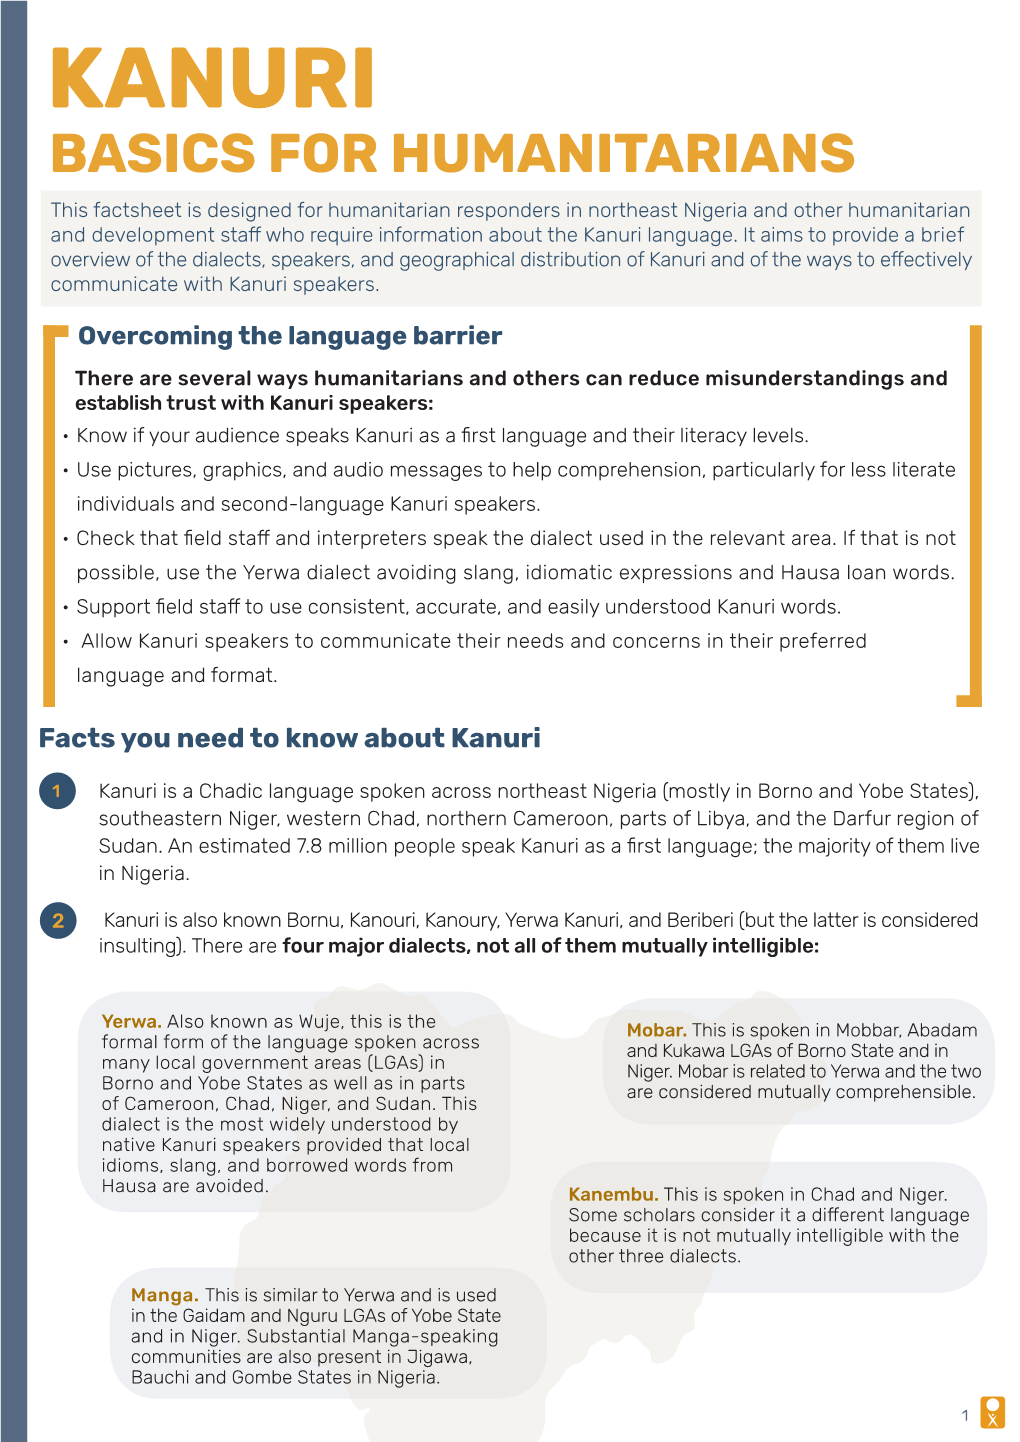 Kanuri Basics for Humanitarians